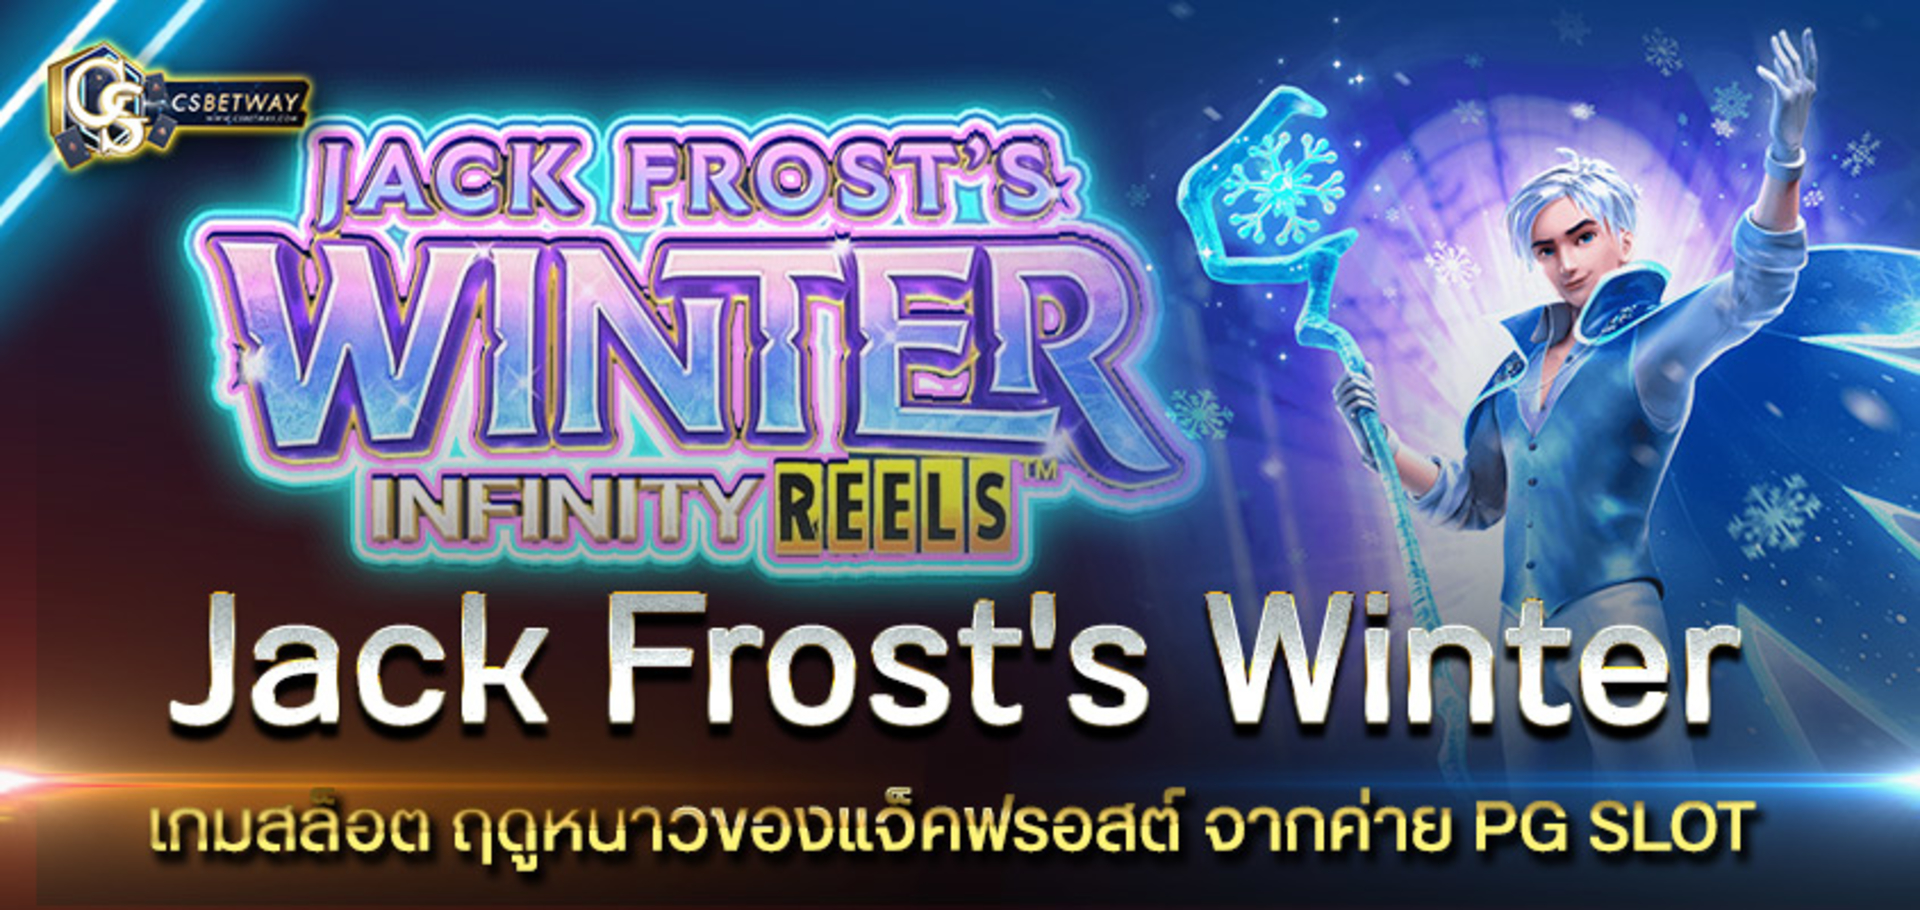 เกมสล็อตออนไลน์ใหม่มาแรง Jack Frost's Winter เกมสล็อต ฤดูหนาวของแจ็คฟรอสต์ จากค่าย PG SLOT เล่นง่ายได้ แตกบ่อย มาให้คุณทดลองได้แล้ววันนี้ สล็อตพีจี PGสล็อต